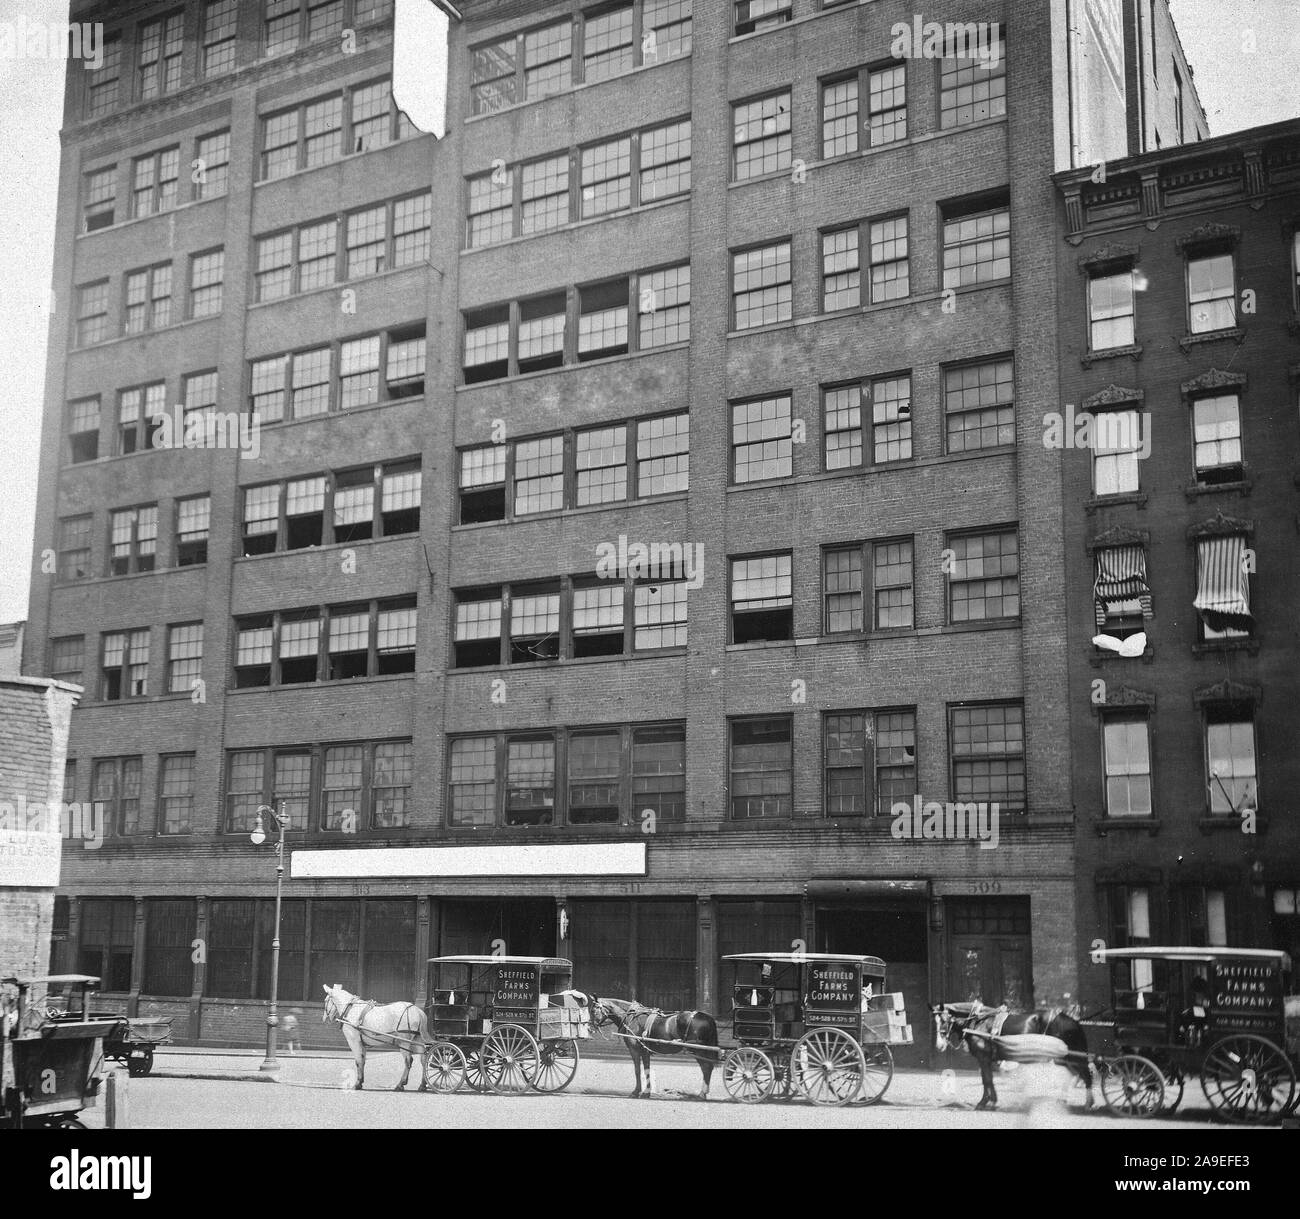 1918 Alien Property Custodian - Eigentum beschlagnahmt - Beschlagnahme von fremden Eigentum durch die US-Regierung. Golde Patent Company, New York, N.Y Stockfoto